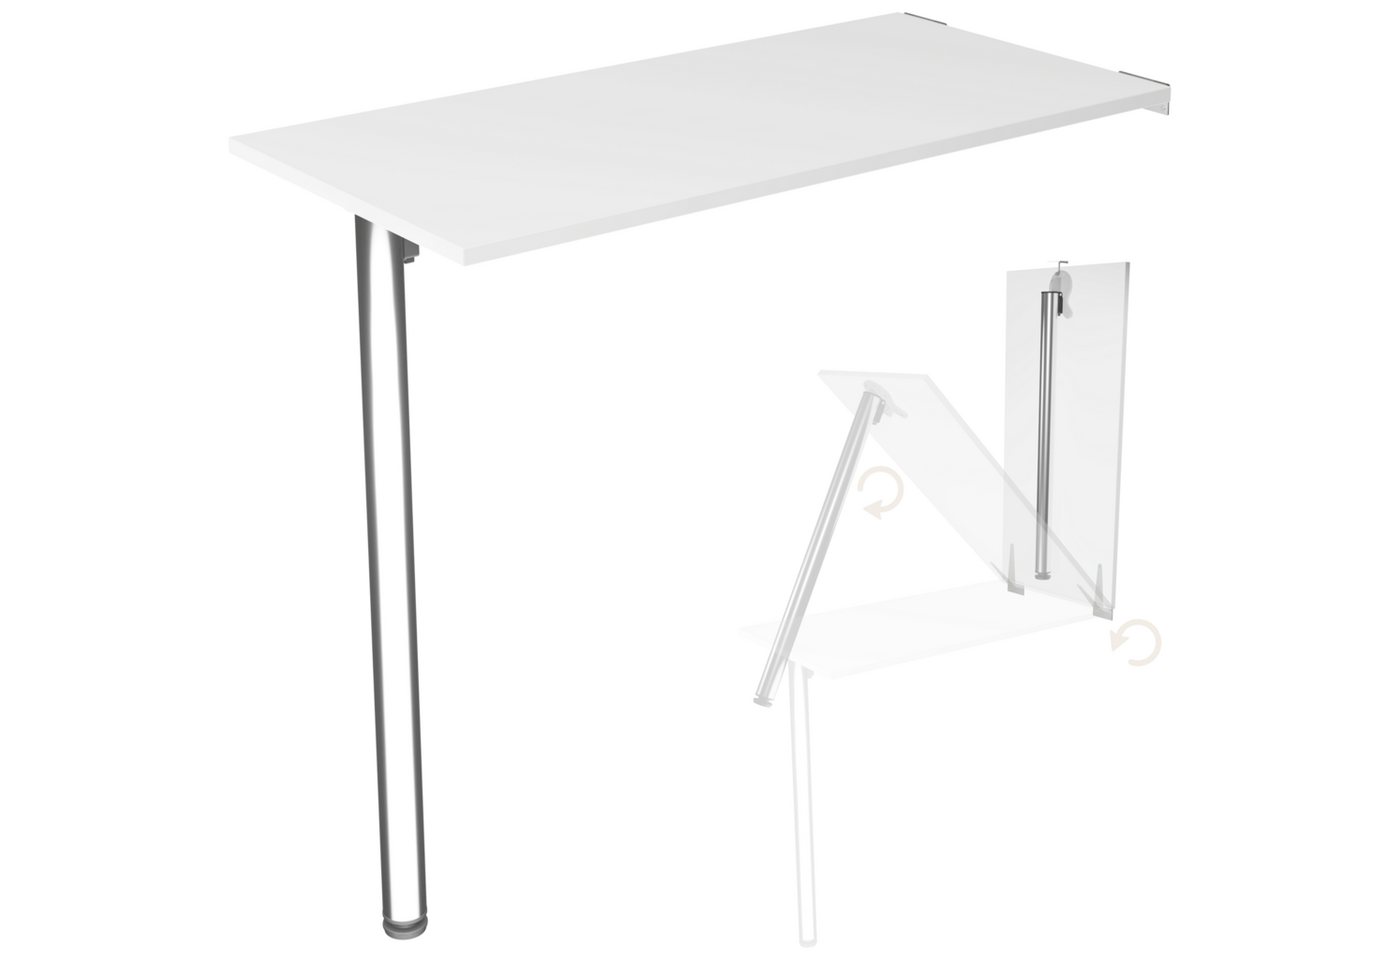 KDR Produktgestaltung Klapptisch Wandklapptisch Esstisch Küchentisch Schreibtisch Wand Tisch Klappbar, Weiß von KDR Produktgestaltung